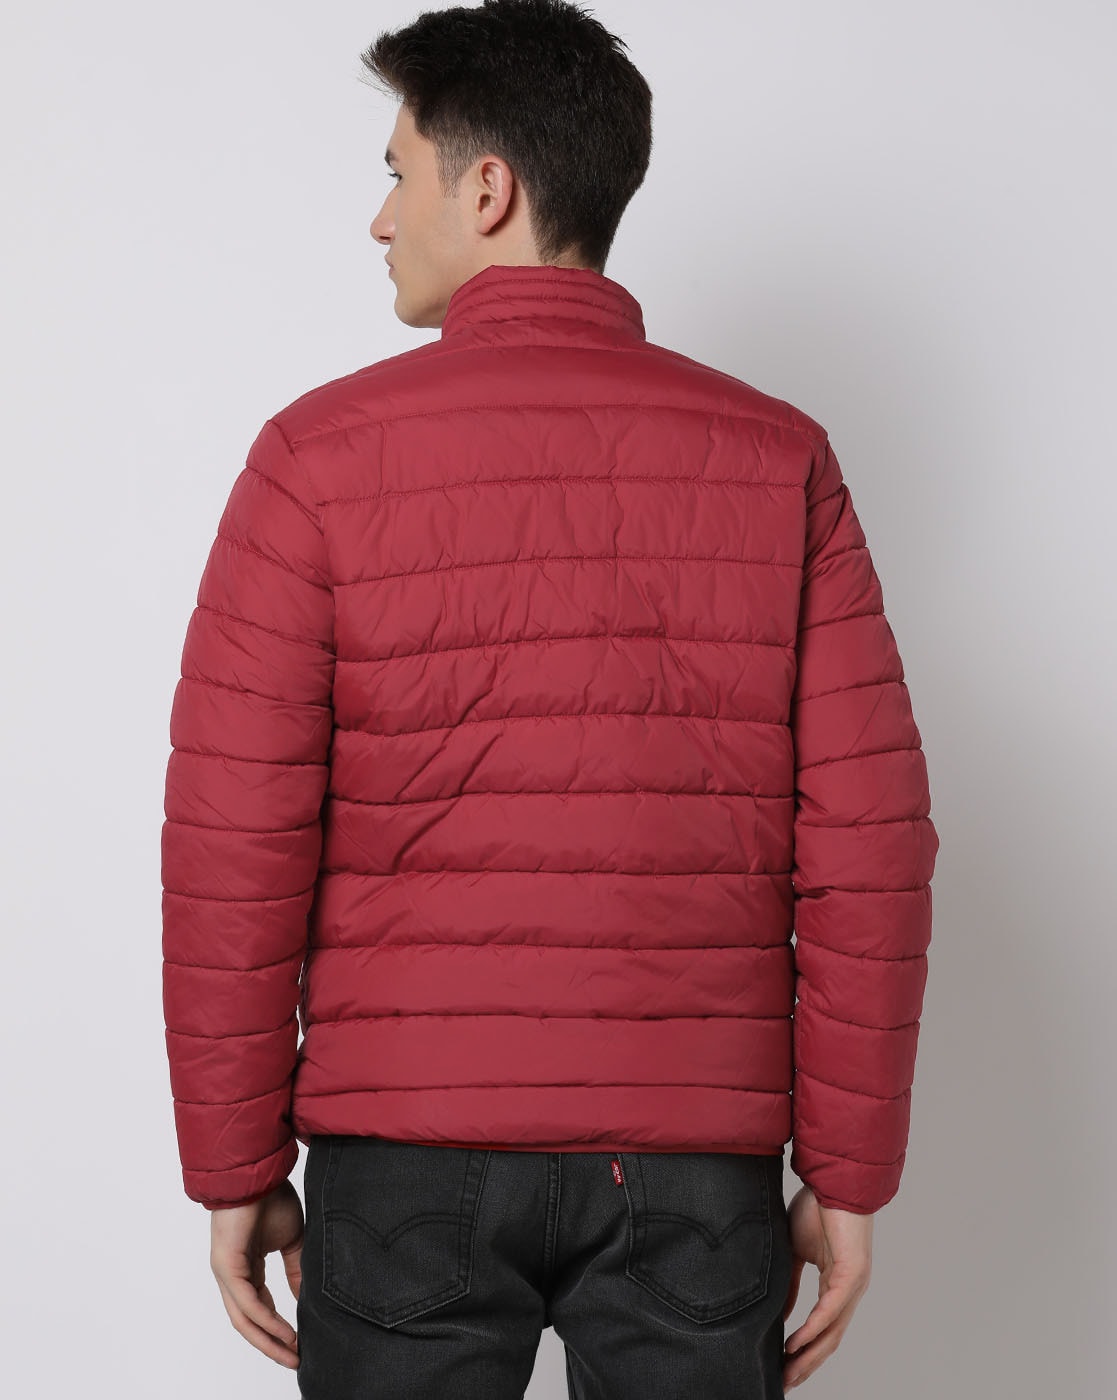 Men's Puffer Jacket Lightweight Packable Winter Jacket | Mens puffer jacket,  Winter jackets, Clothes design